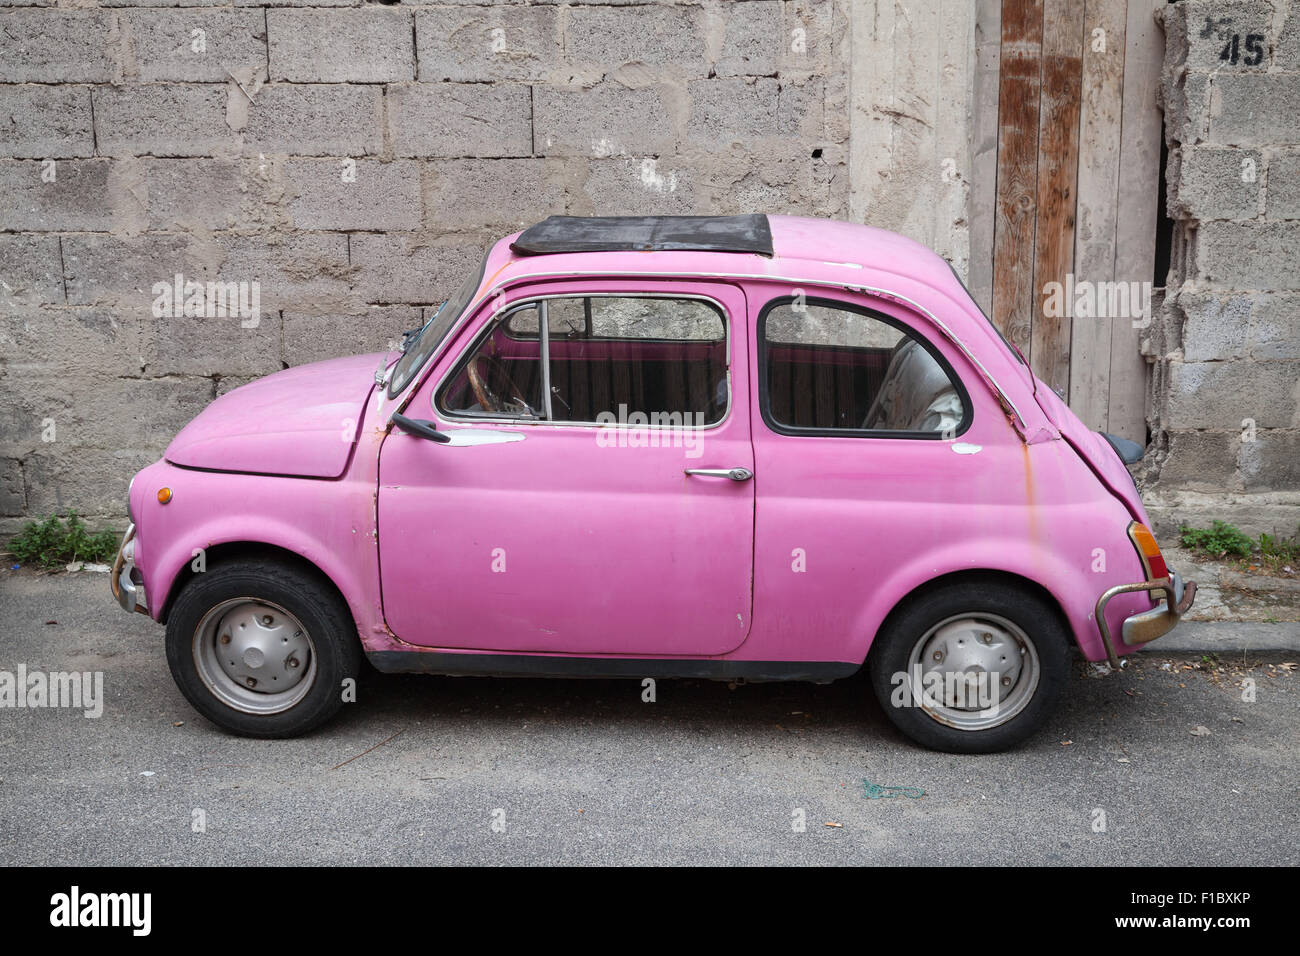 Lacco Ameno, Italien - 15. August 2015: Alte rosa Fiat Nuova 500 Stadtauto vom italienischen Hersteller Fiat zwischen 1957 produziert ein Stockfoto